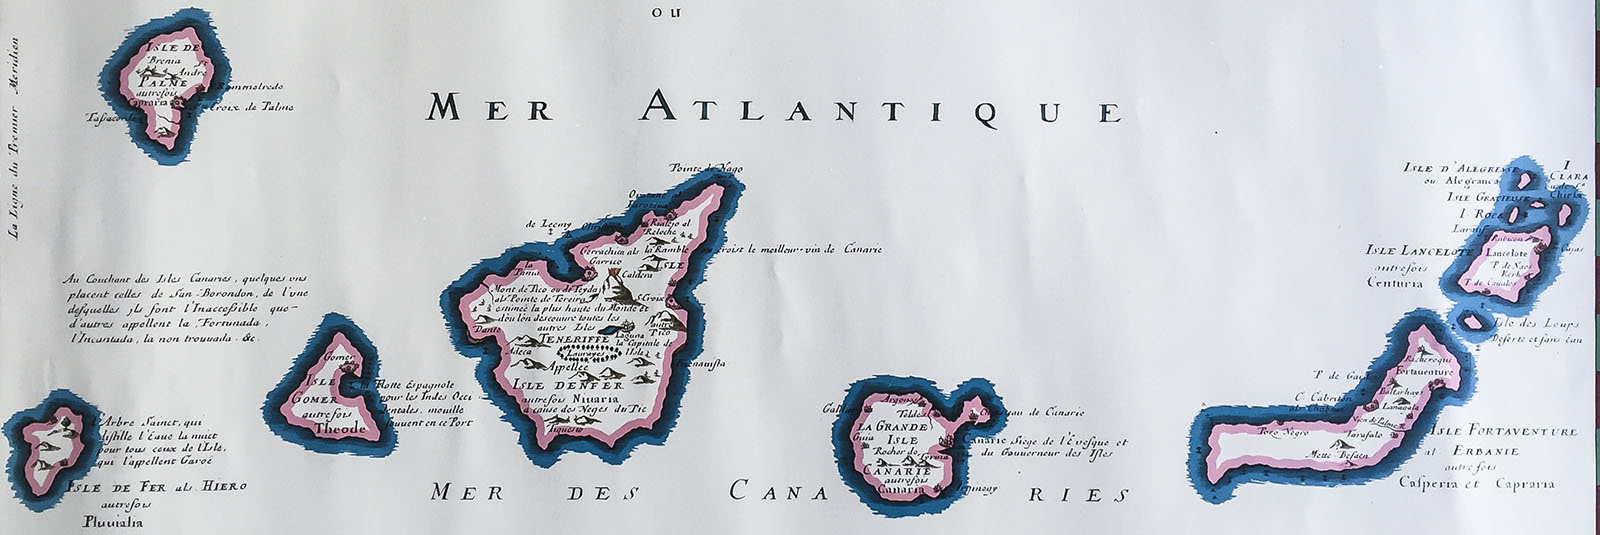 Karte der Kanarischen Inseln aus dem Jahr 1653 – Fuerteventura noch sehr vage.